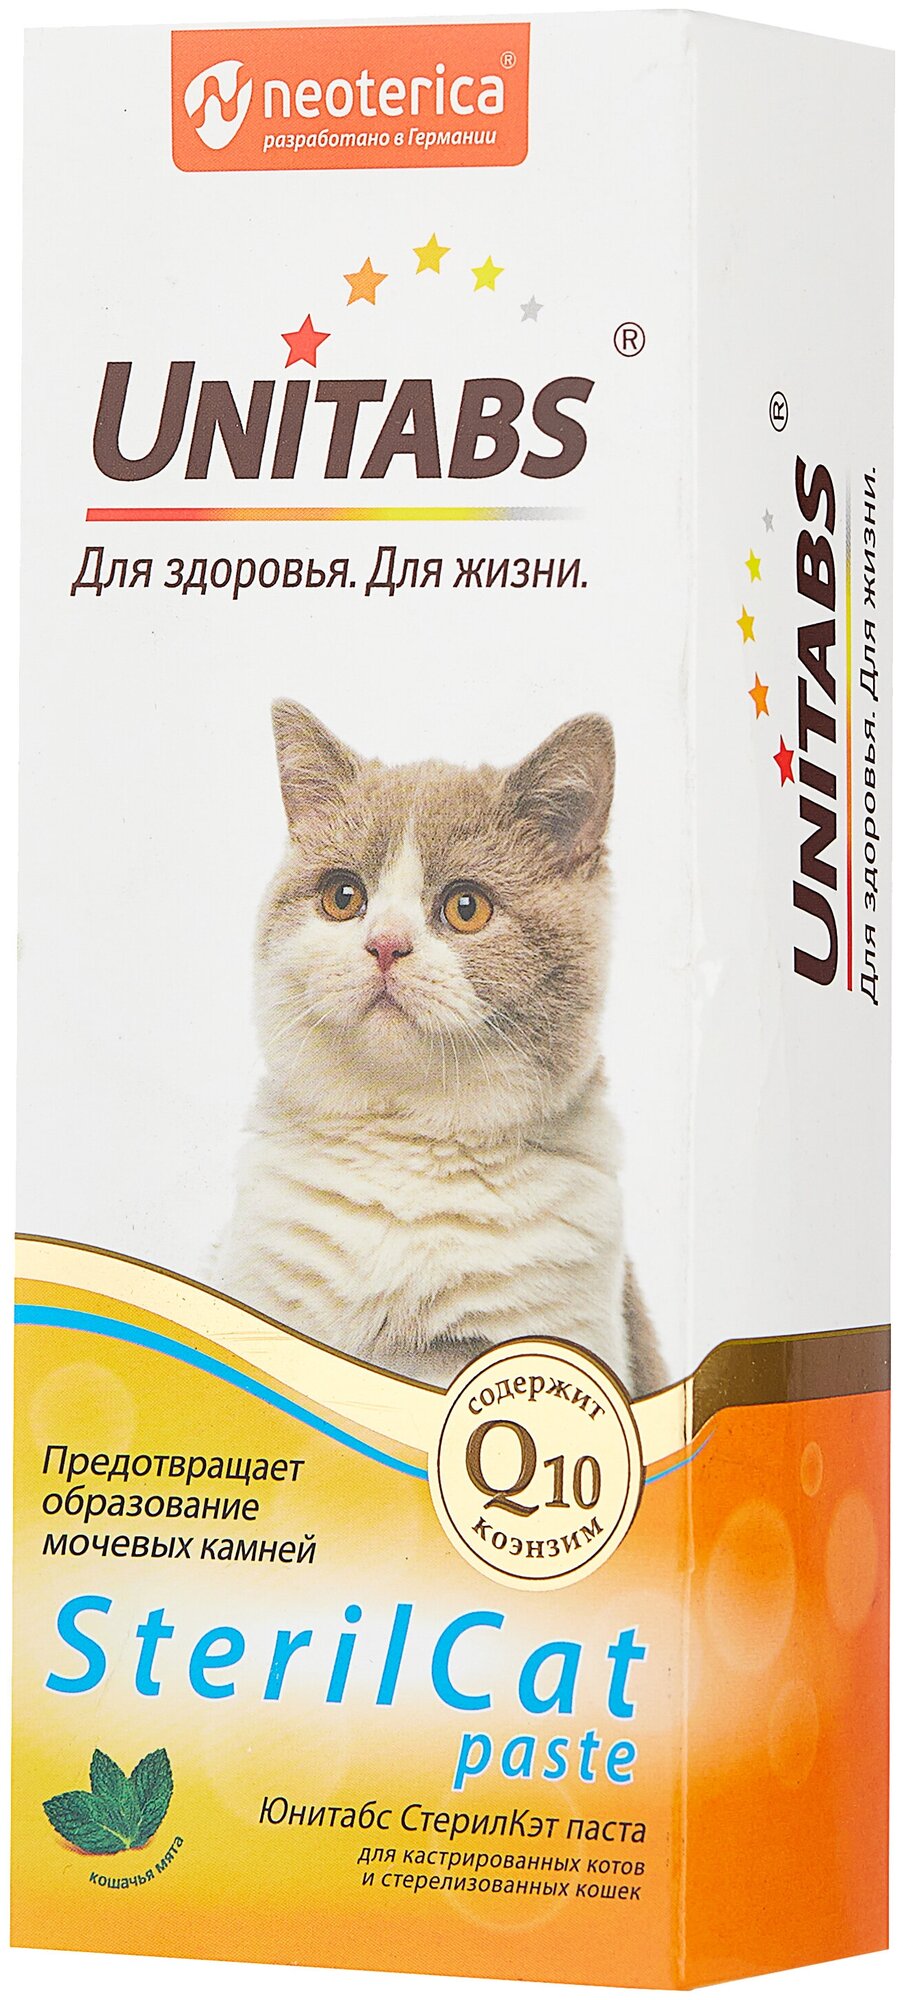 Гель Unitabs для кошек SterilCat с Q10, 120мл - фото №4